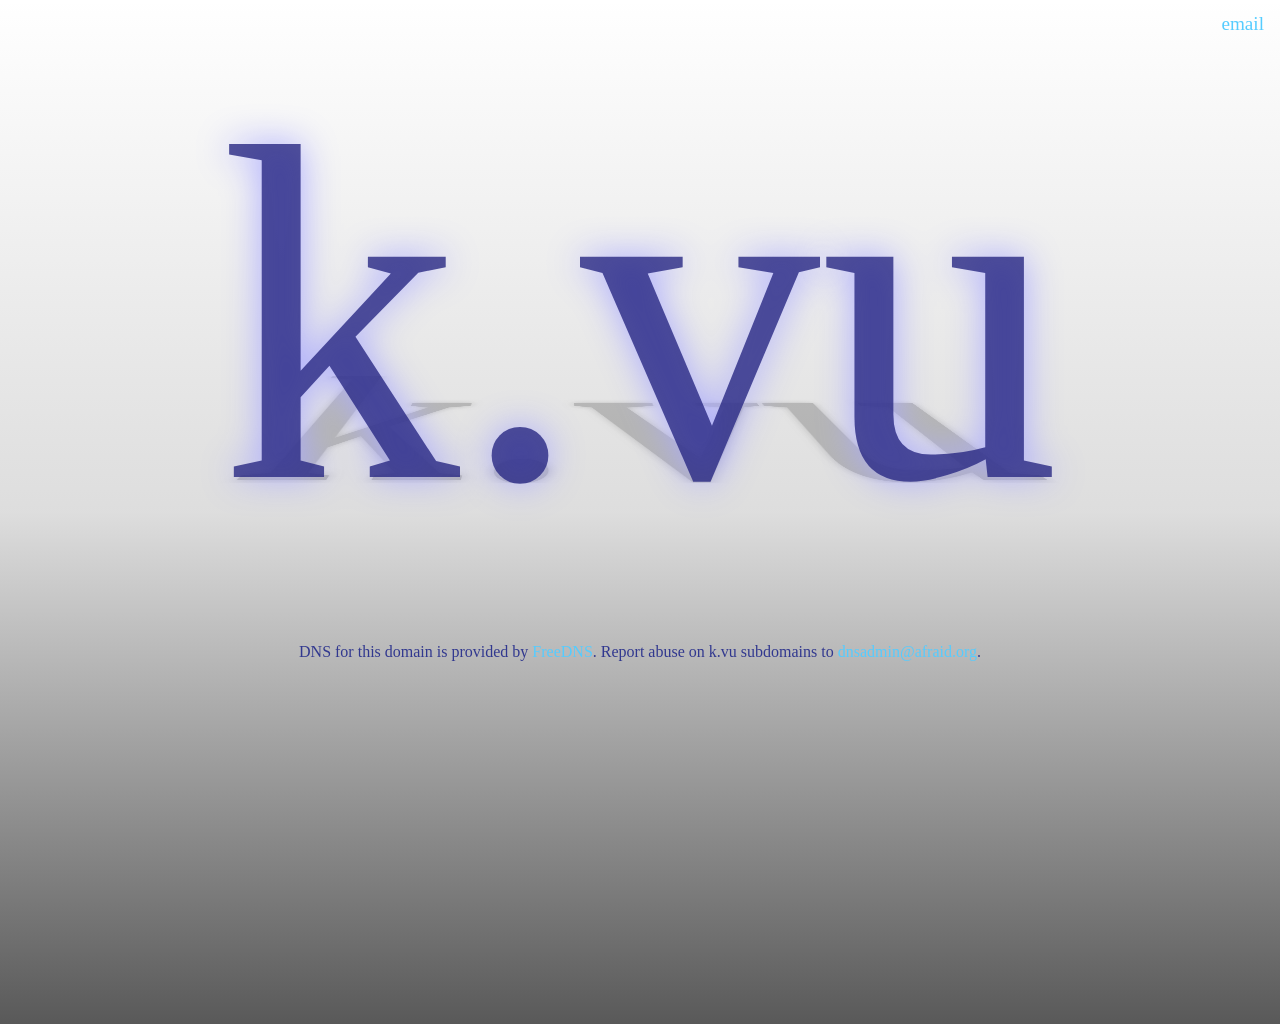 k.vu